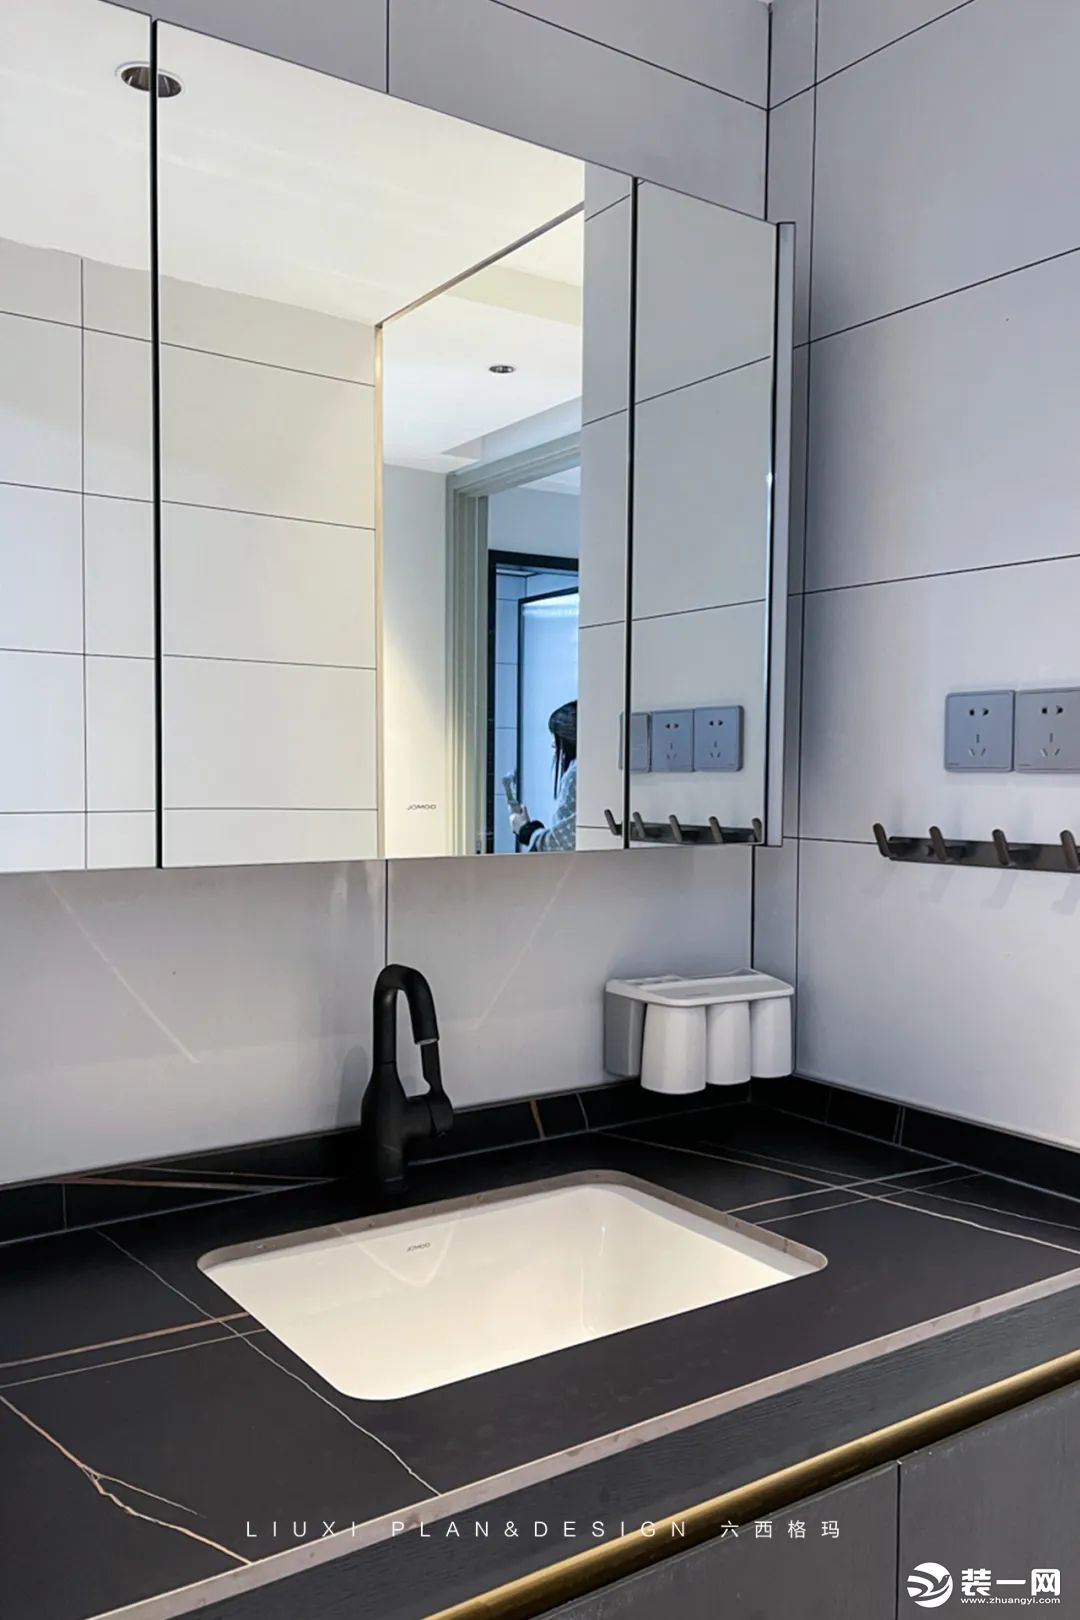 卫生间选择了悬空式的浴室柜，可以有效隔离地面潮气；台面为大理石材质，方便日常清理，让台面时刻保持干净